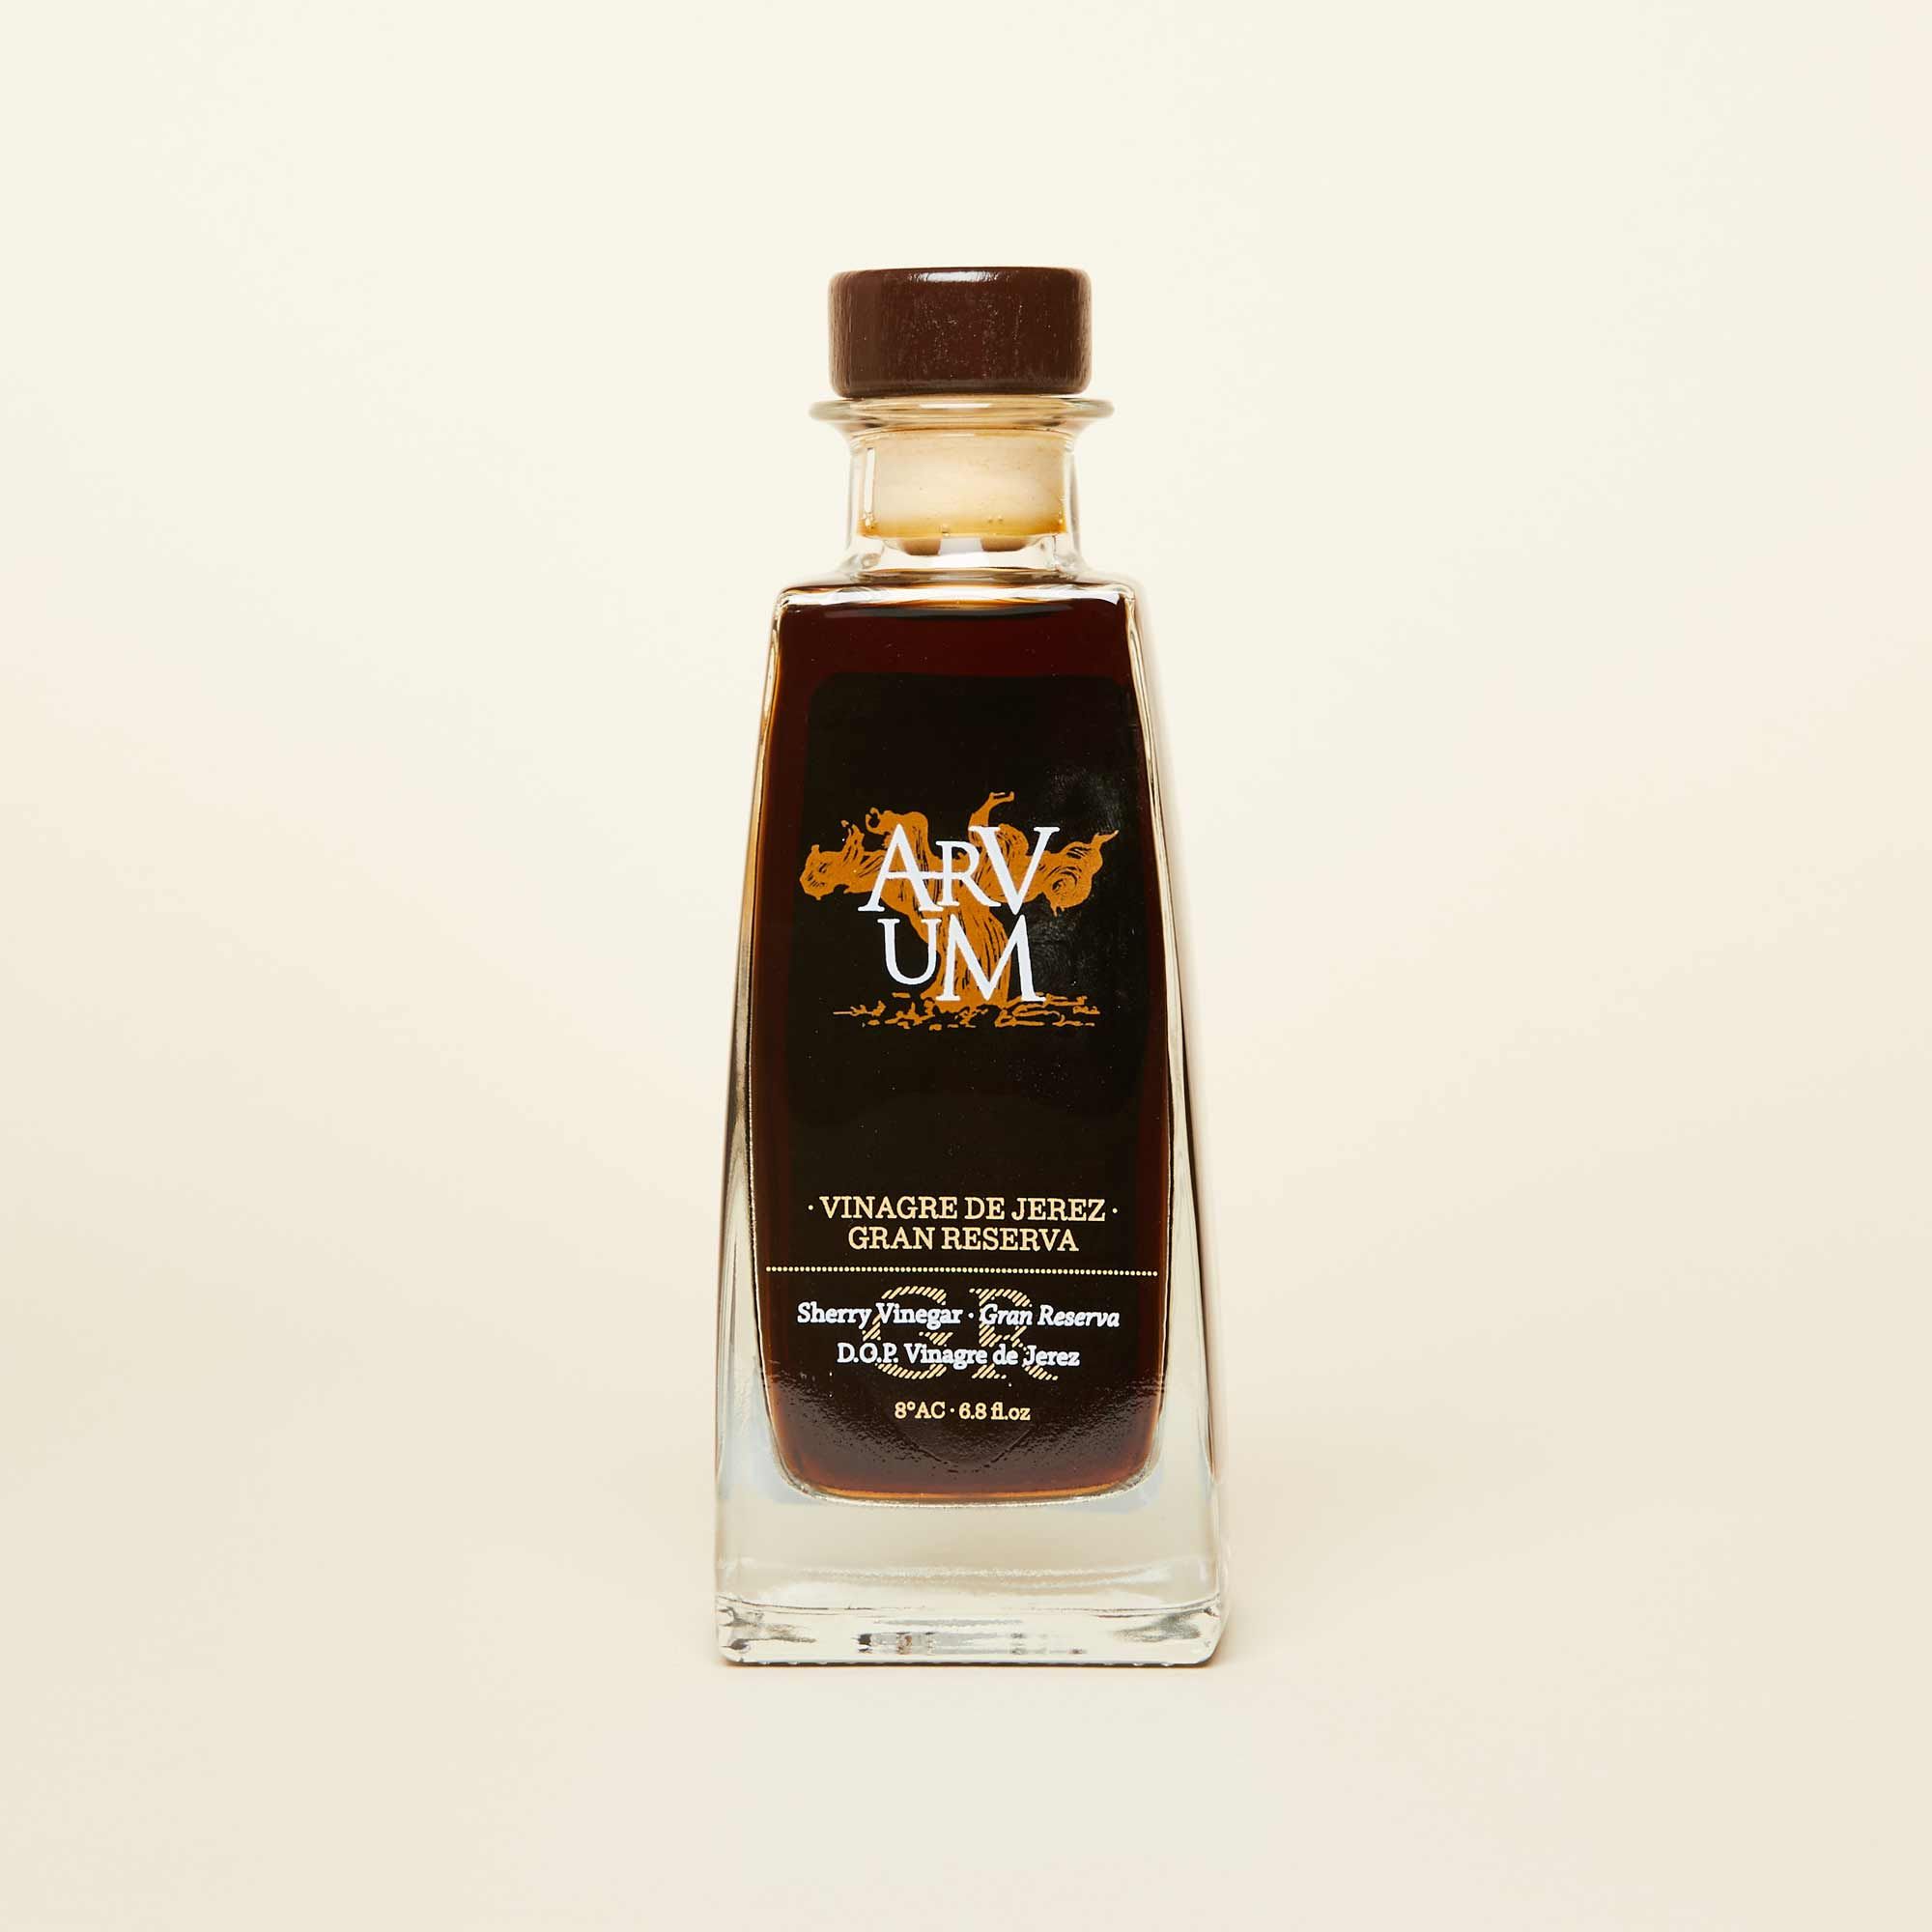 A bottle of dark brown vinegar with a dark brown cap